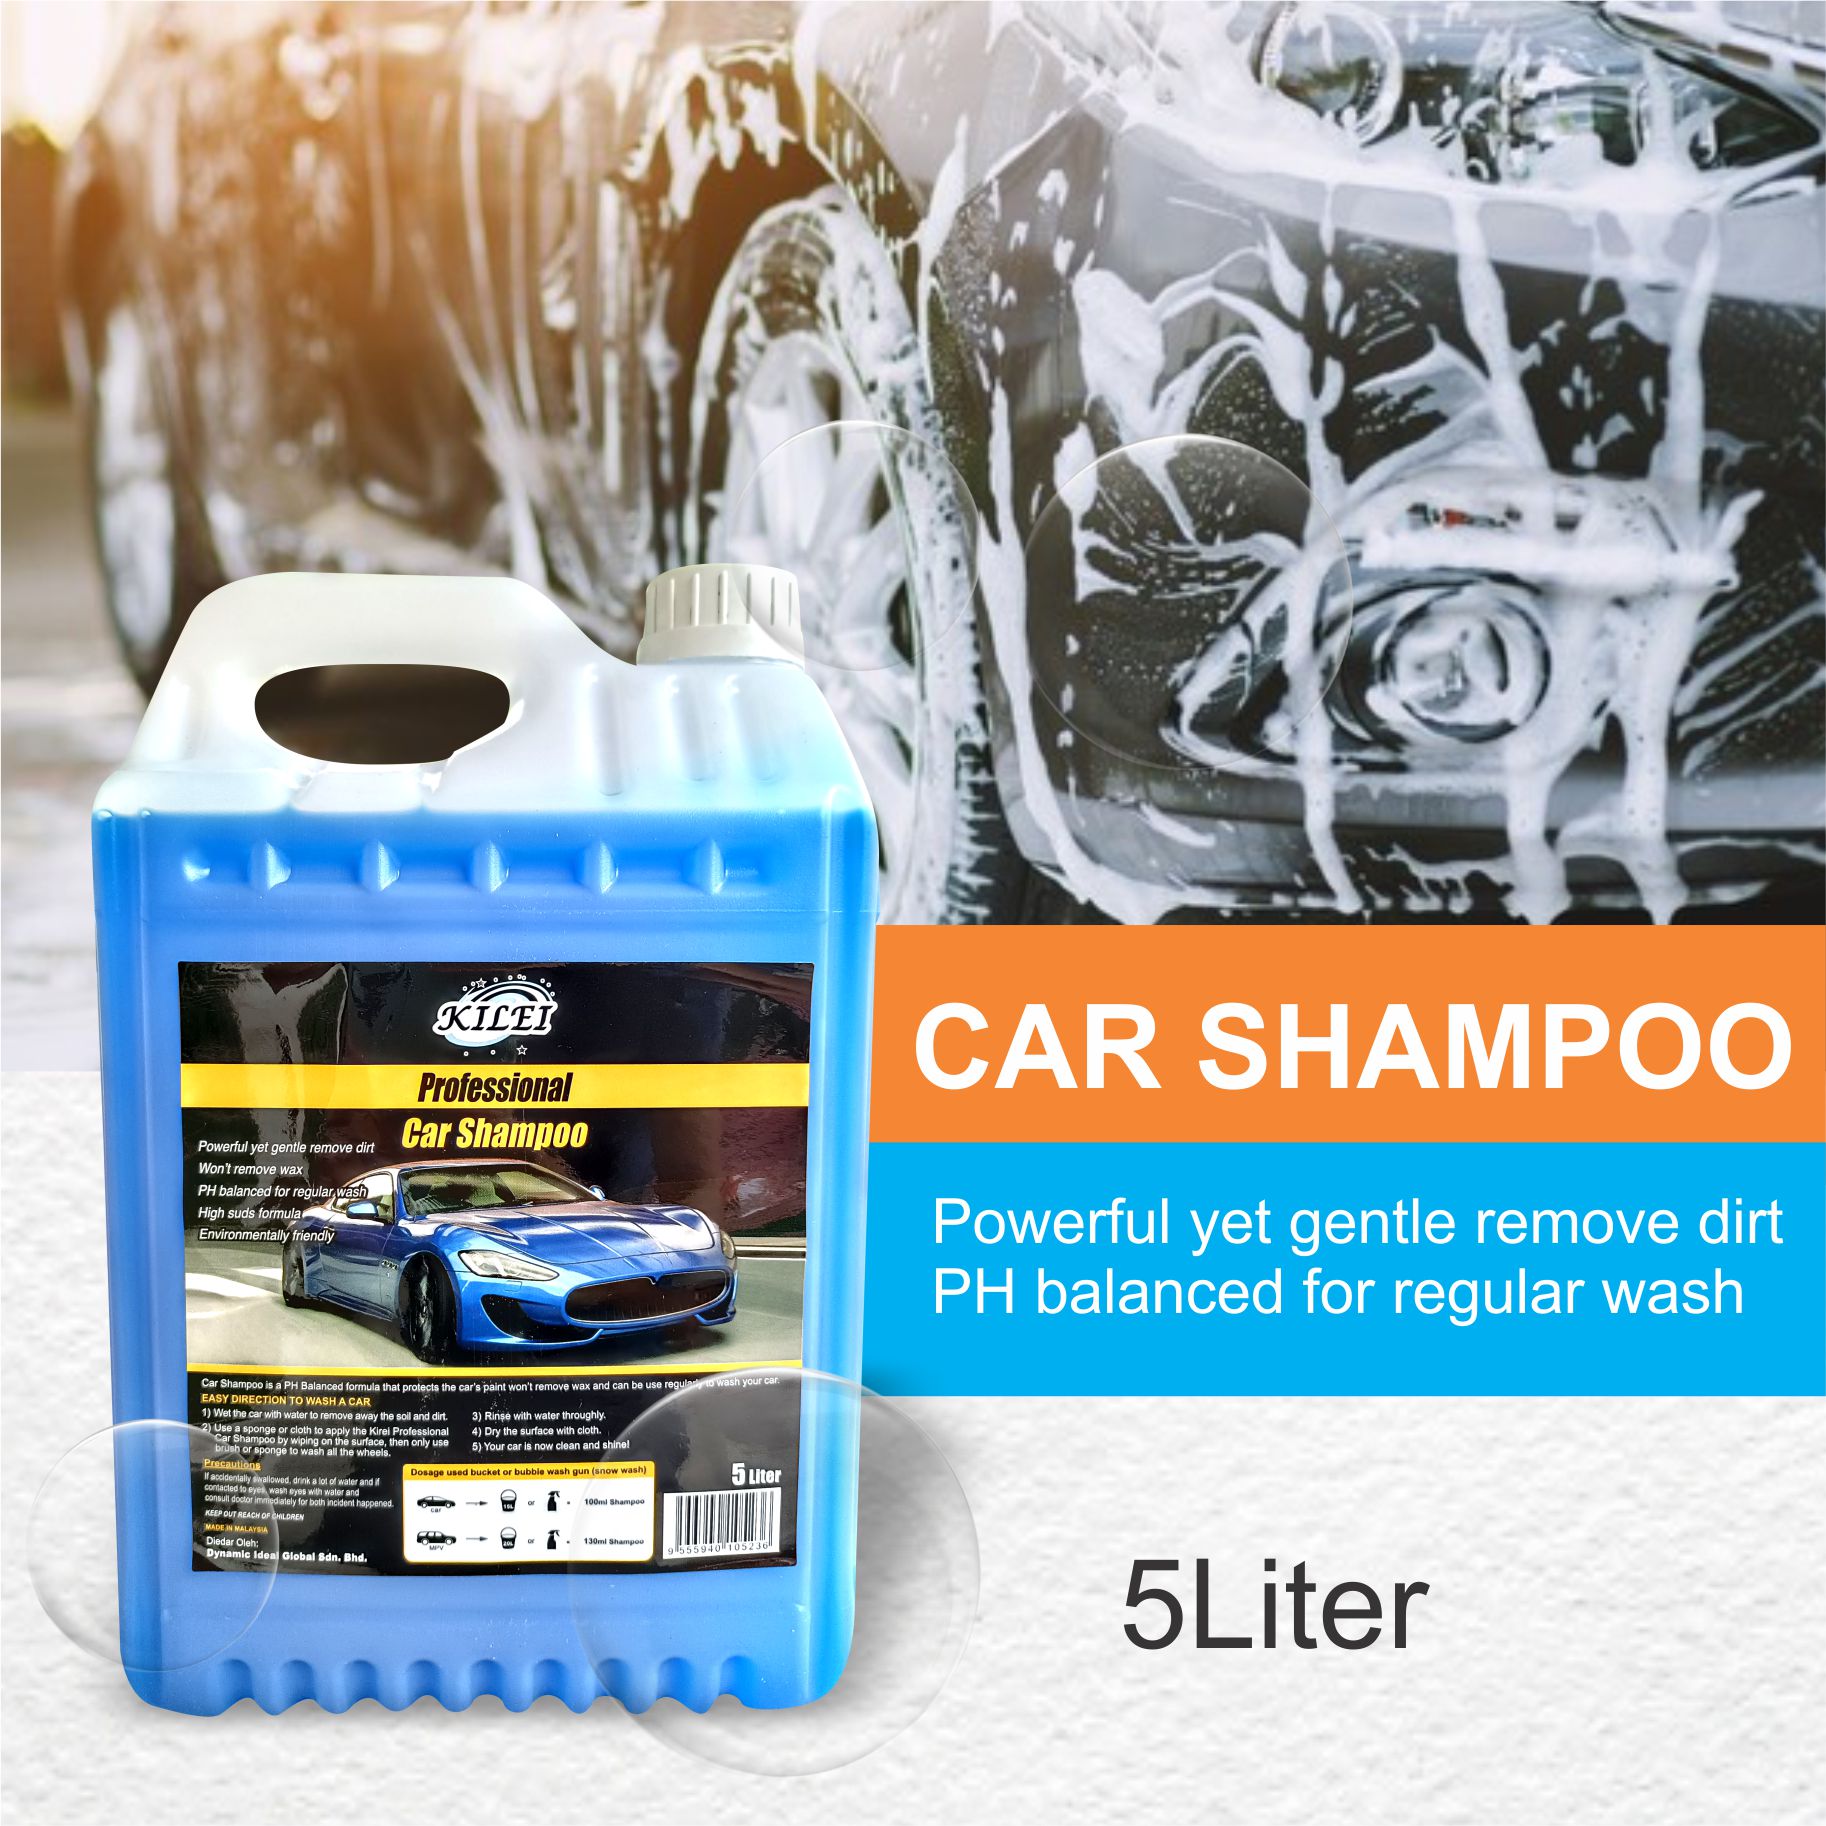 Kilei car shampoo- 5 liter